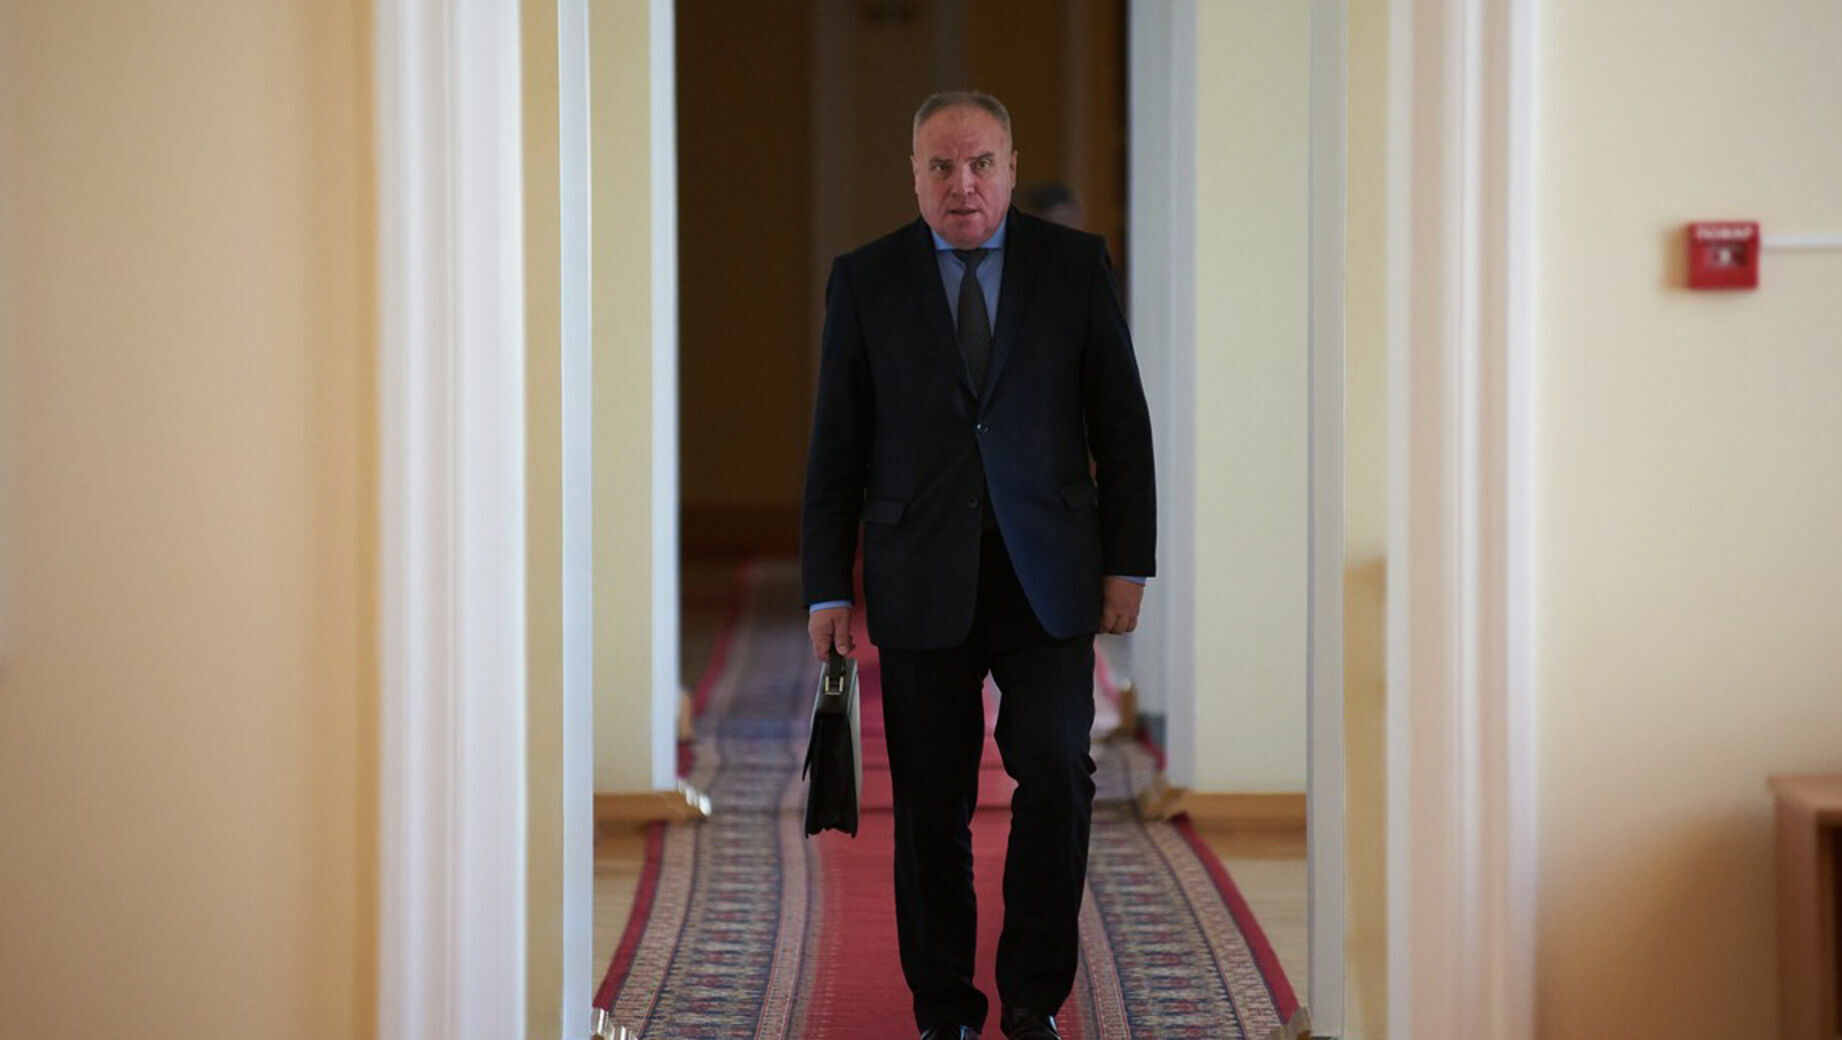 Вице-губернатор Омской области Куприянов скоро отправится в отставку